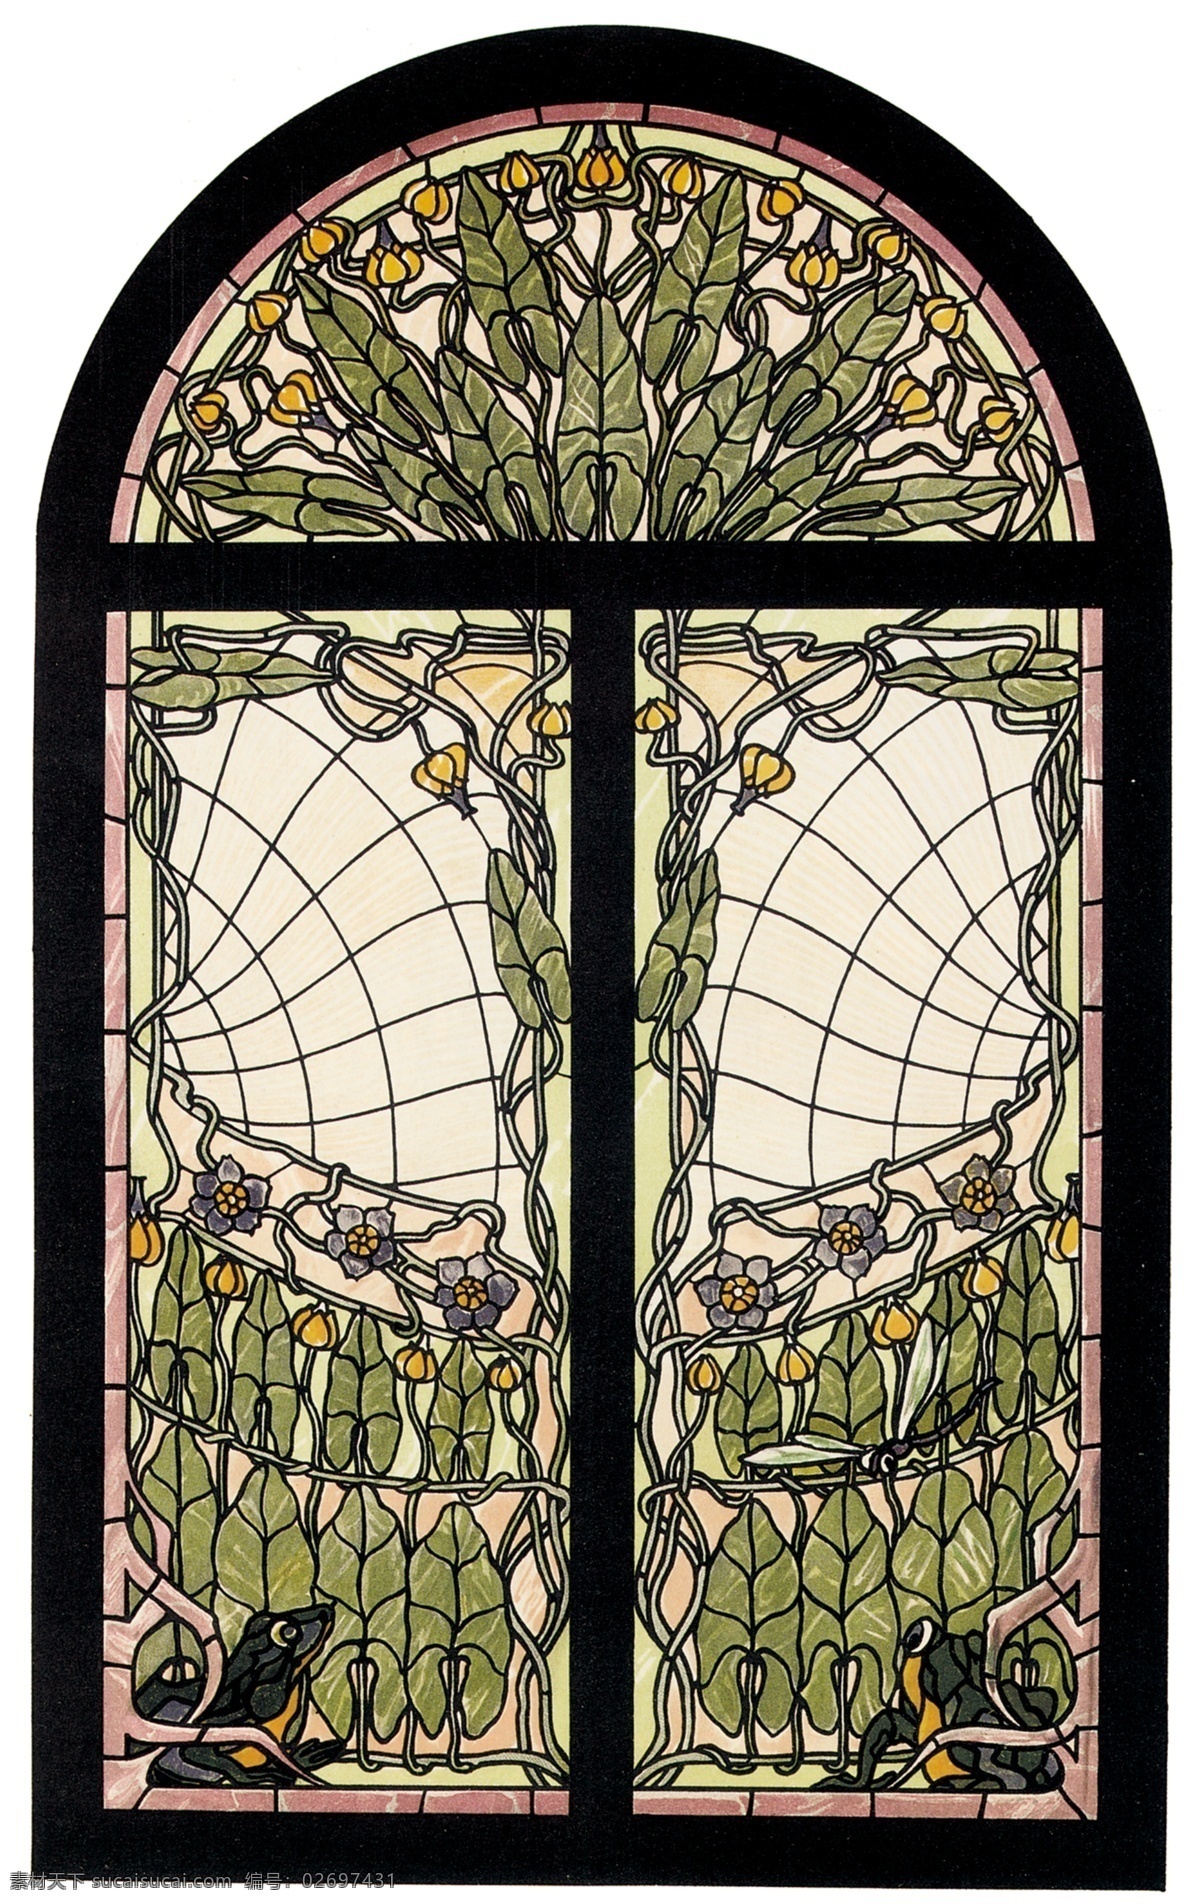 彩色 玻璃 传统 古典 教堂 欧洲 设计素材 图案 宗教 宗教信仰 文化艺术